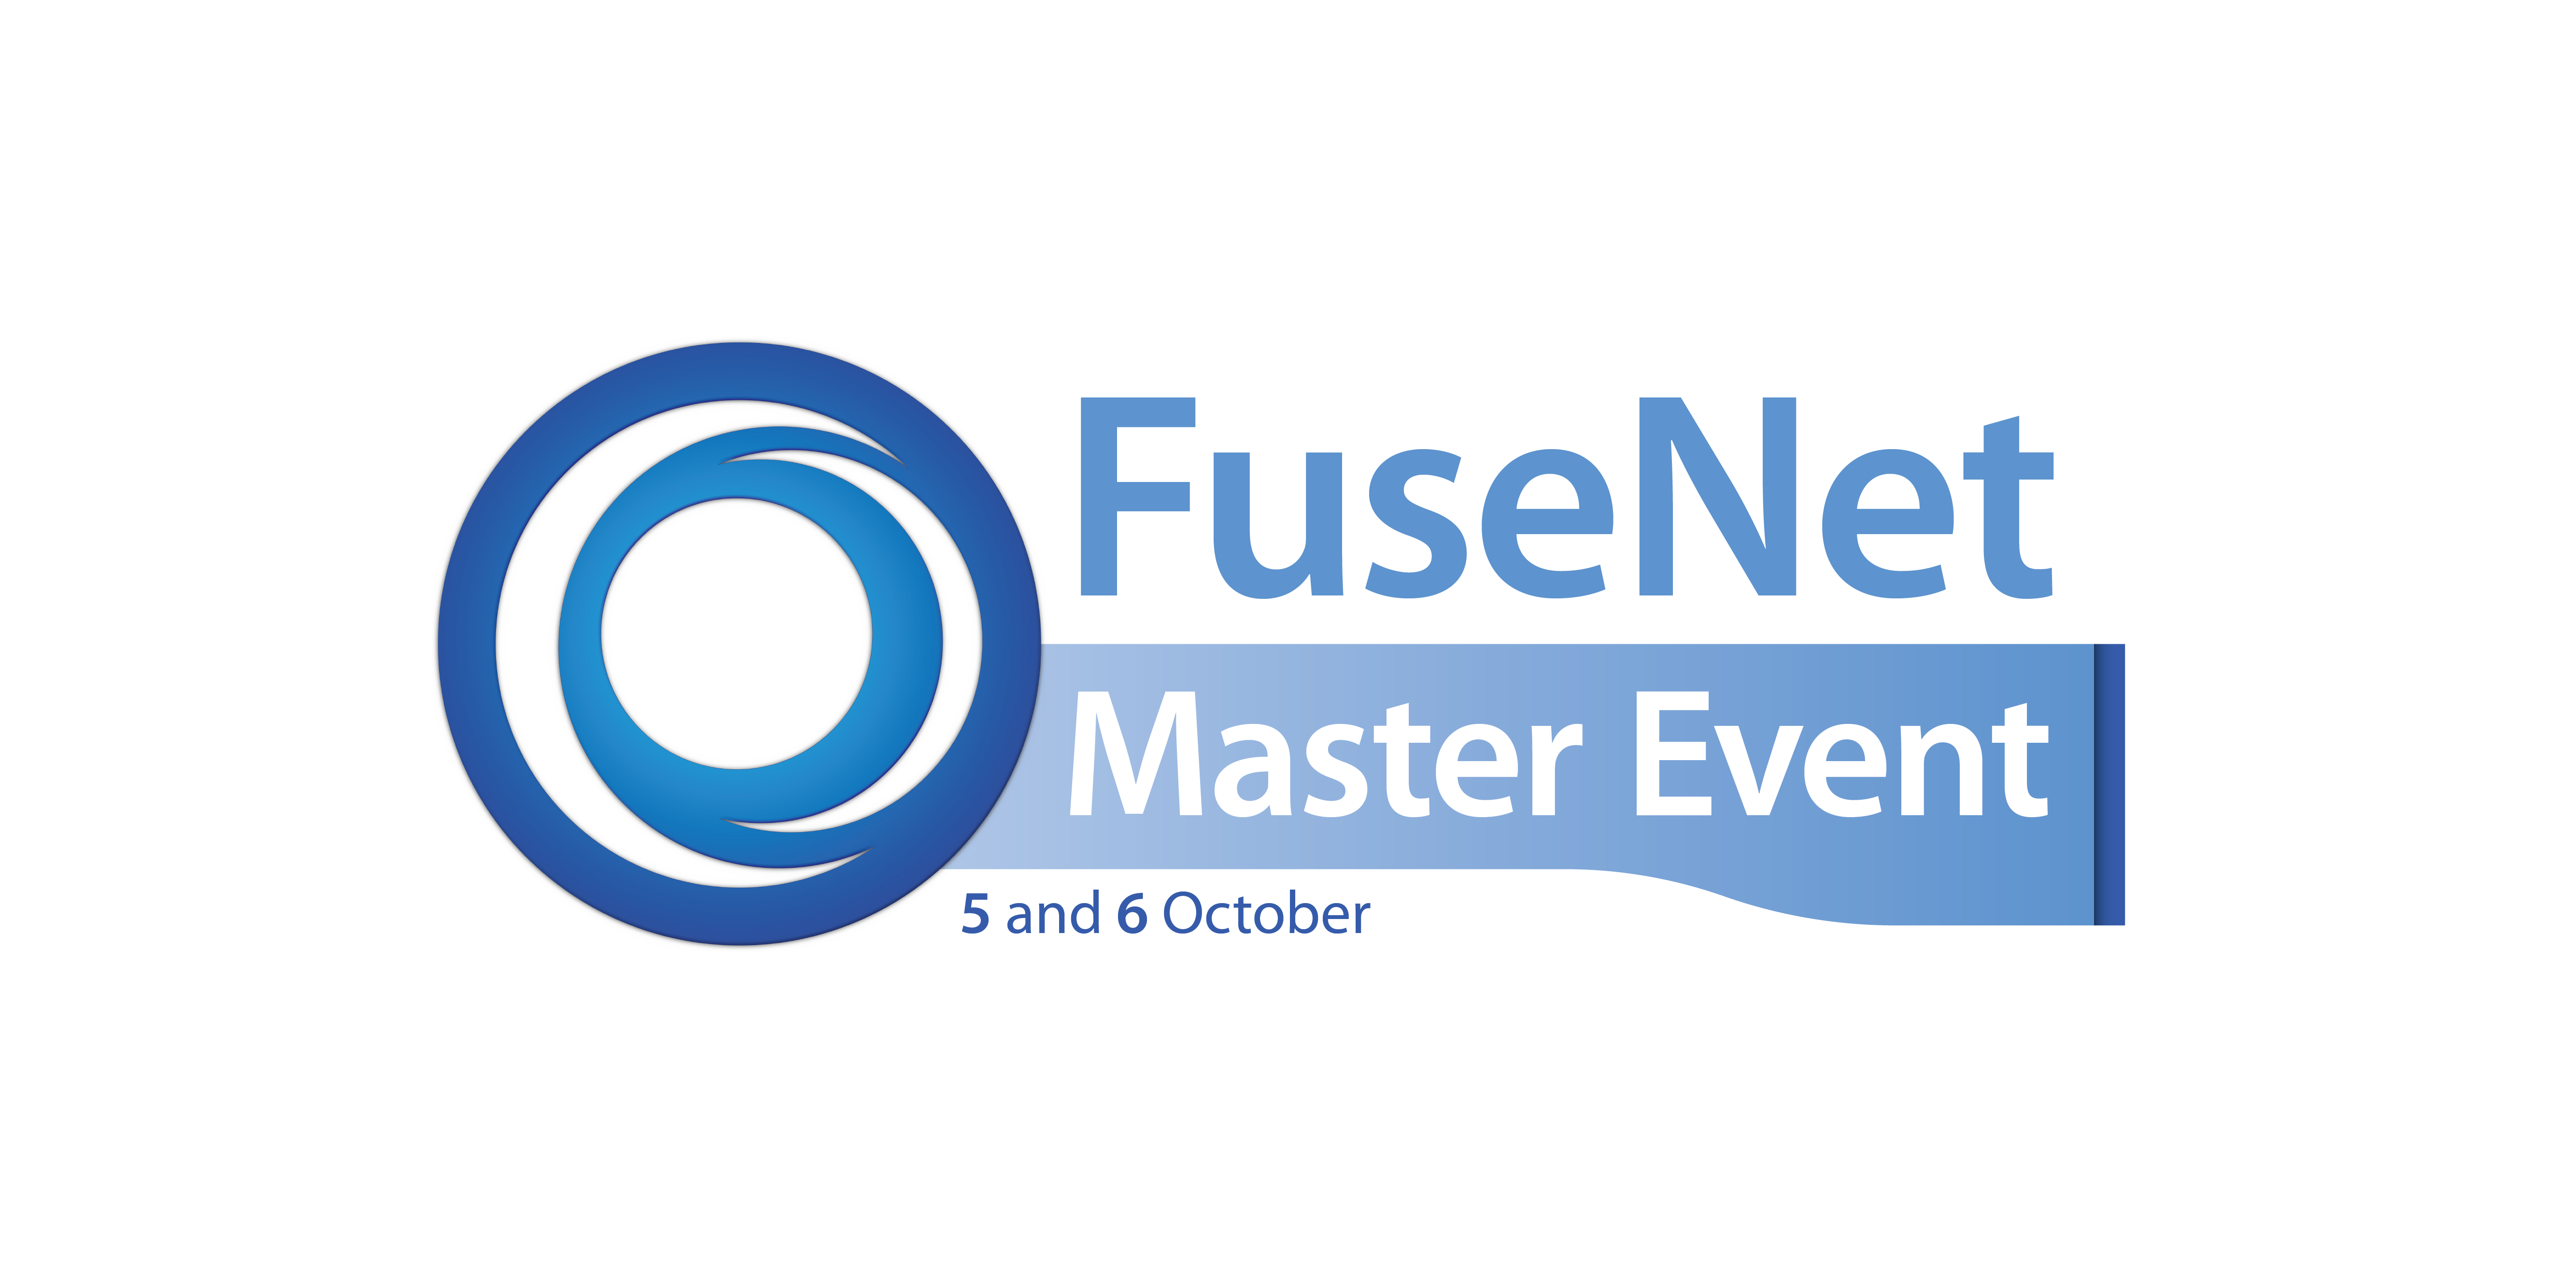 FuseNet Master Event